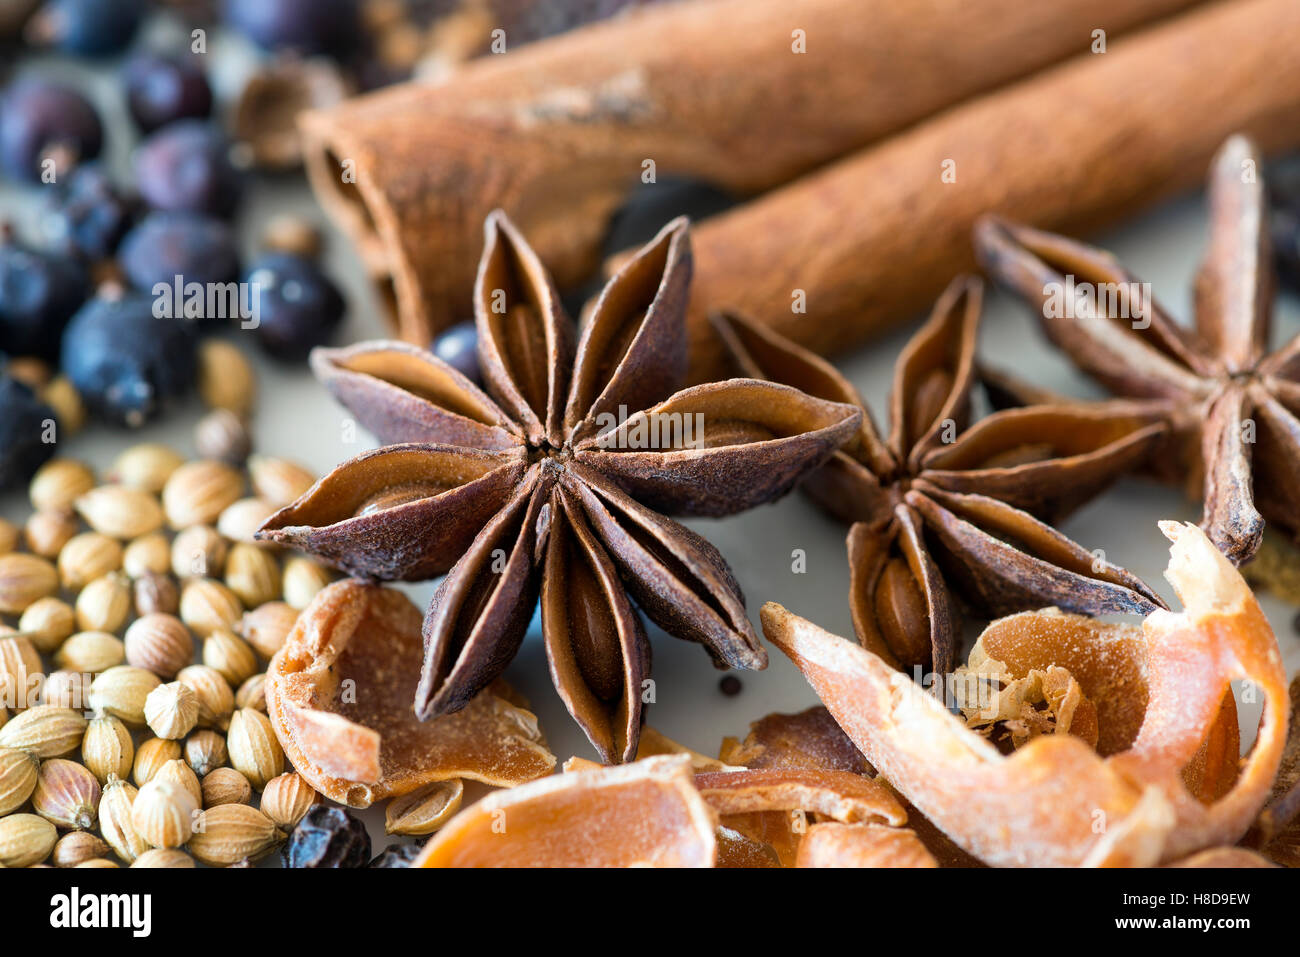 Pickling spices:  Cinnamon sticks Star Anise Mace Juniper Allspice Coriander peppercorns Stock Photo